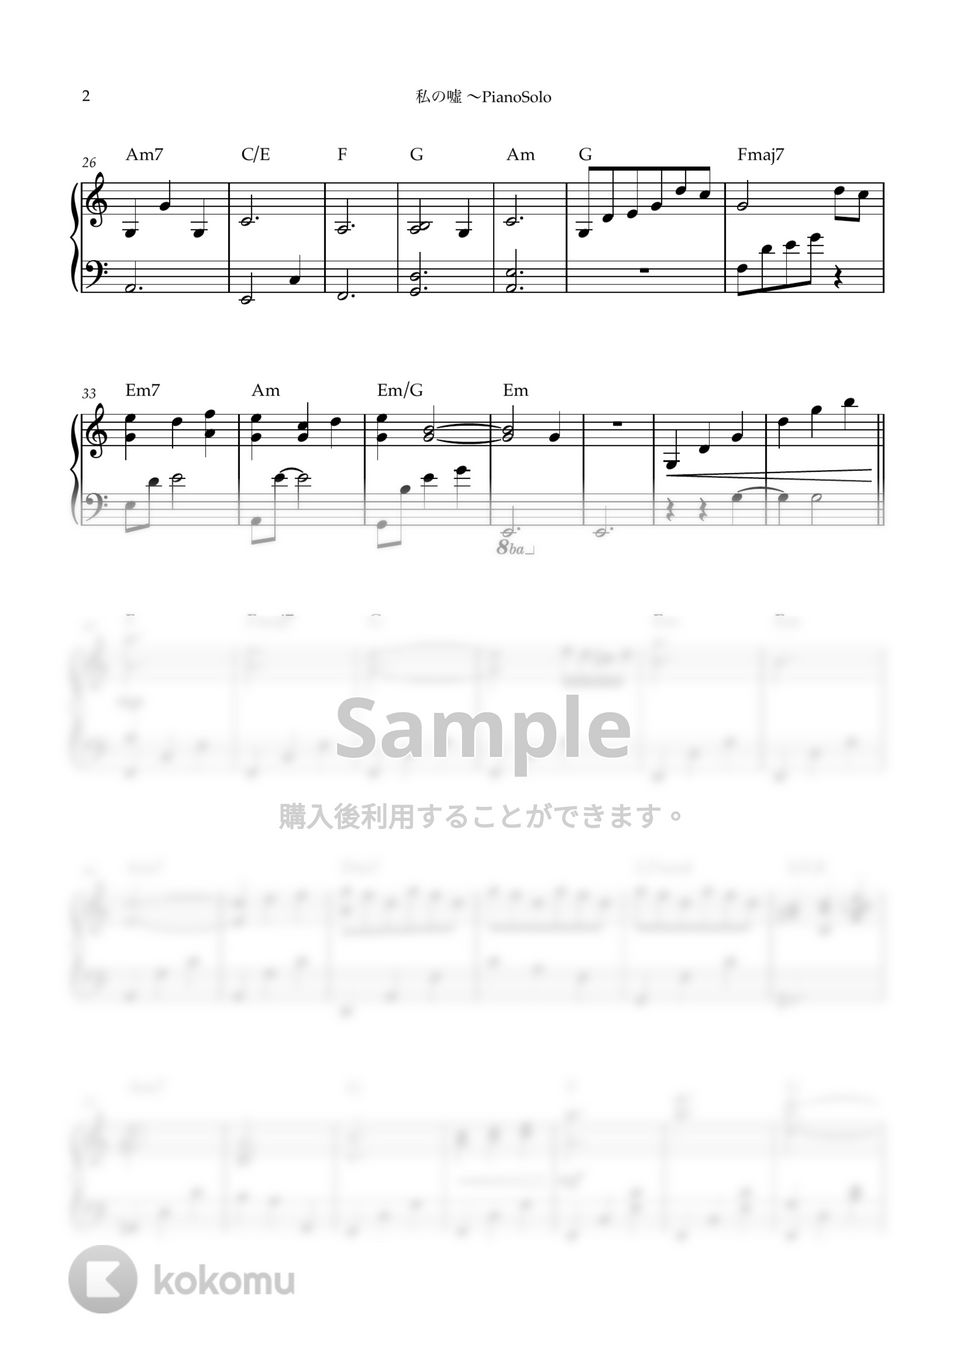 横山克 - 私の嘘〜PianoSolo(四月は君の嘘OST) (ピアノソロ/四月は君の嘘/サウンドトラック/横山克) by kanapiano